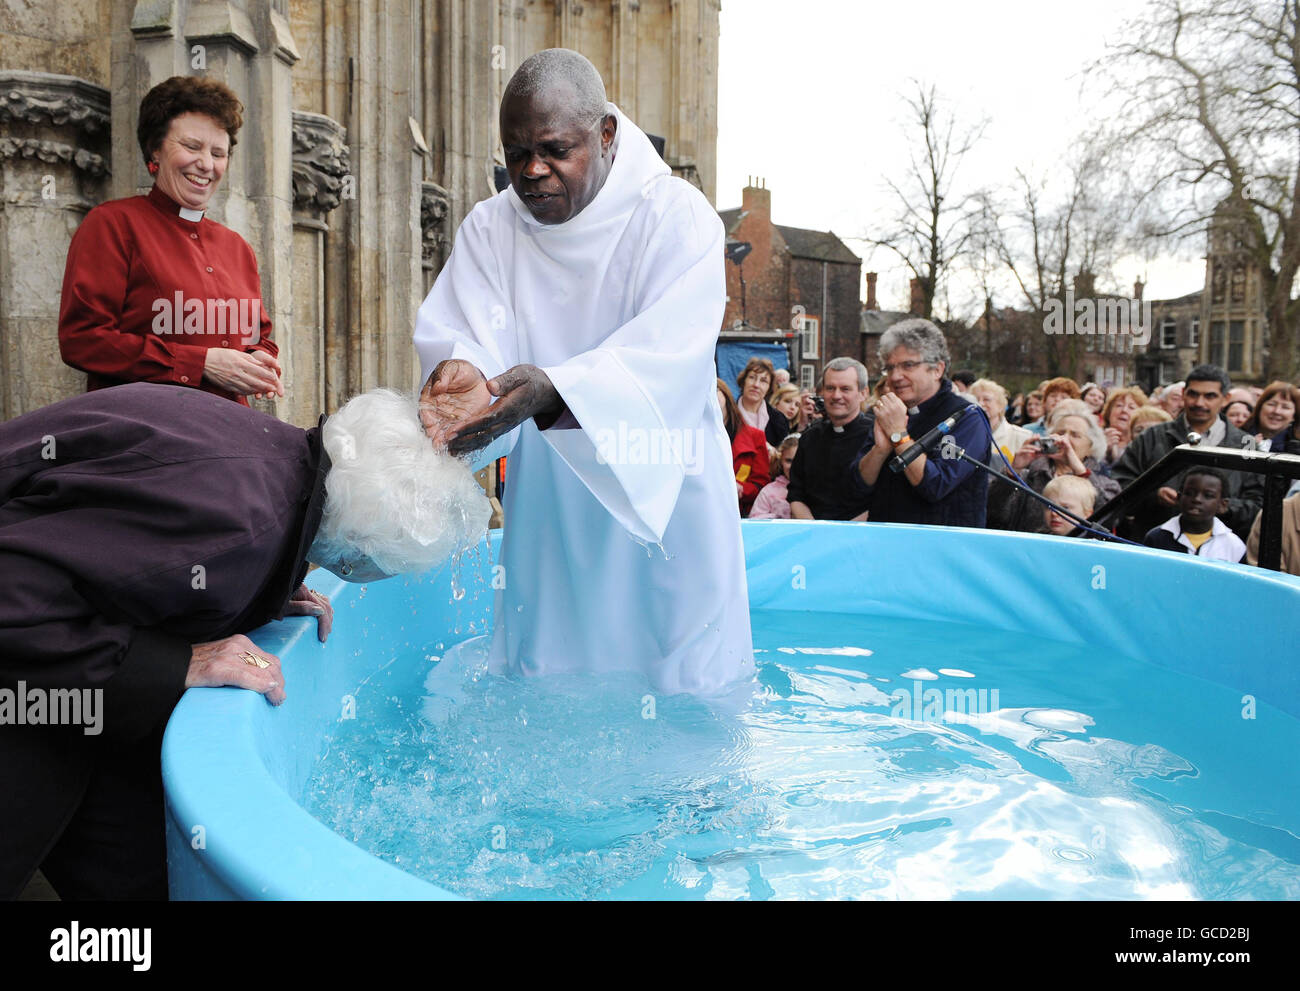 The Archbishop of York, Dr John Sentamu baptises June Cresswell, 84, during Easter baptisms outside York Minster, York. Stock Photo